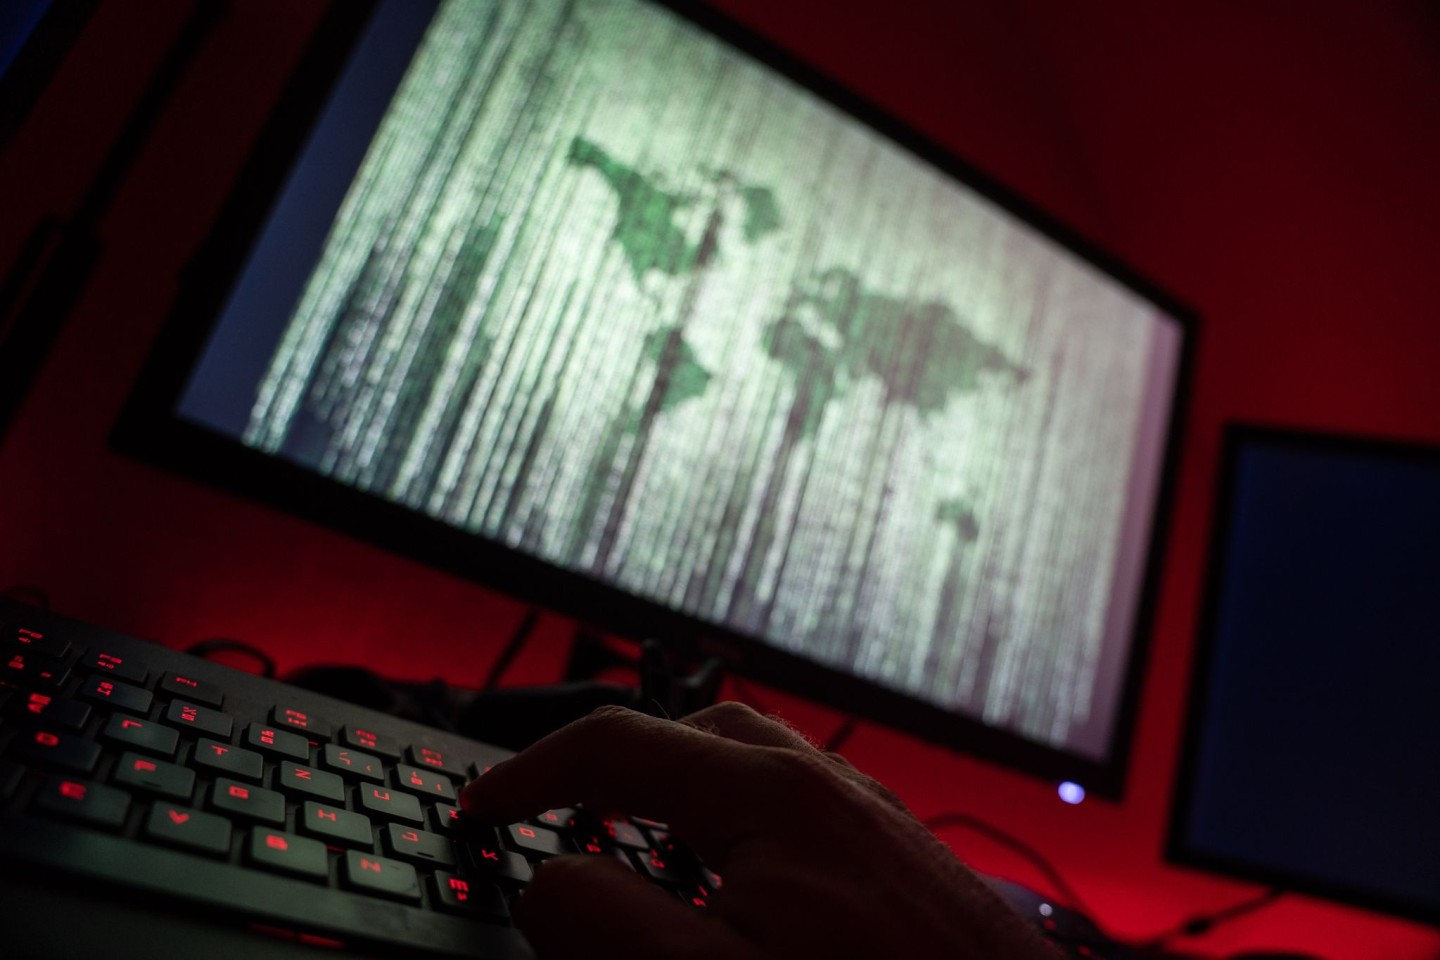 Cyberkriminalität ist kein neues Phänomen. Nun hat eine Bande Datenklau betrieben.